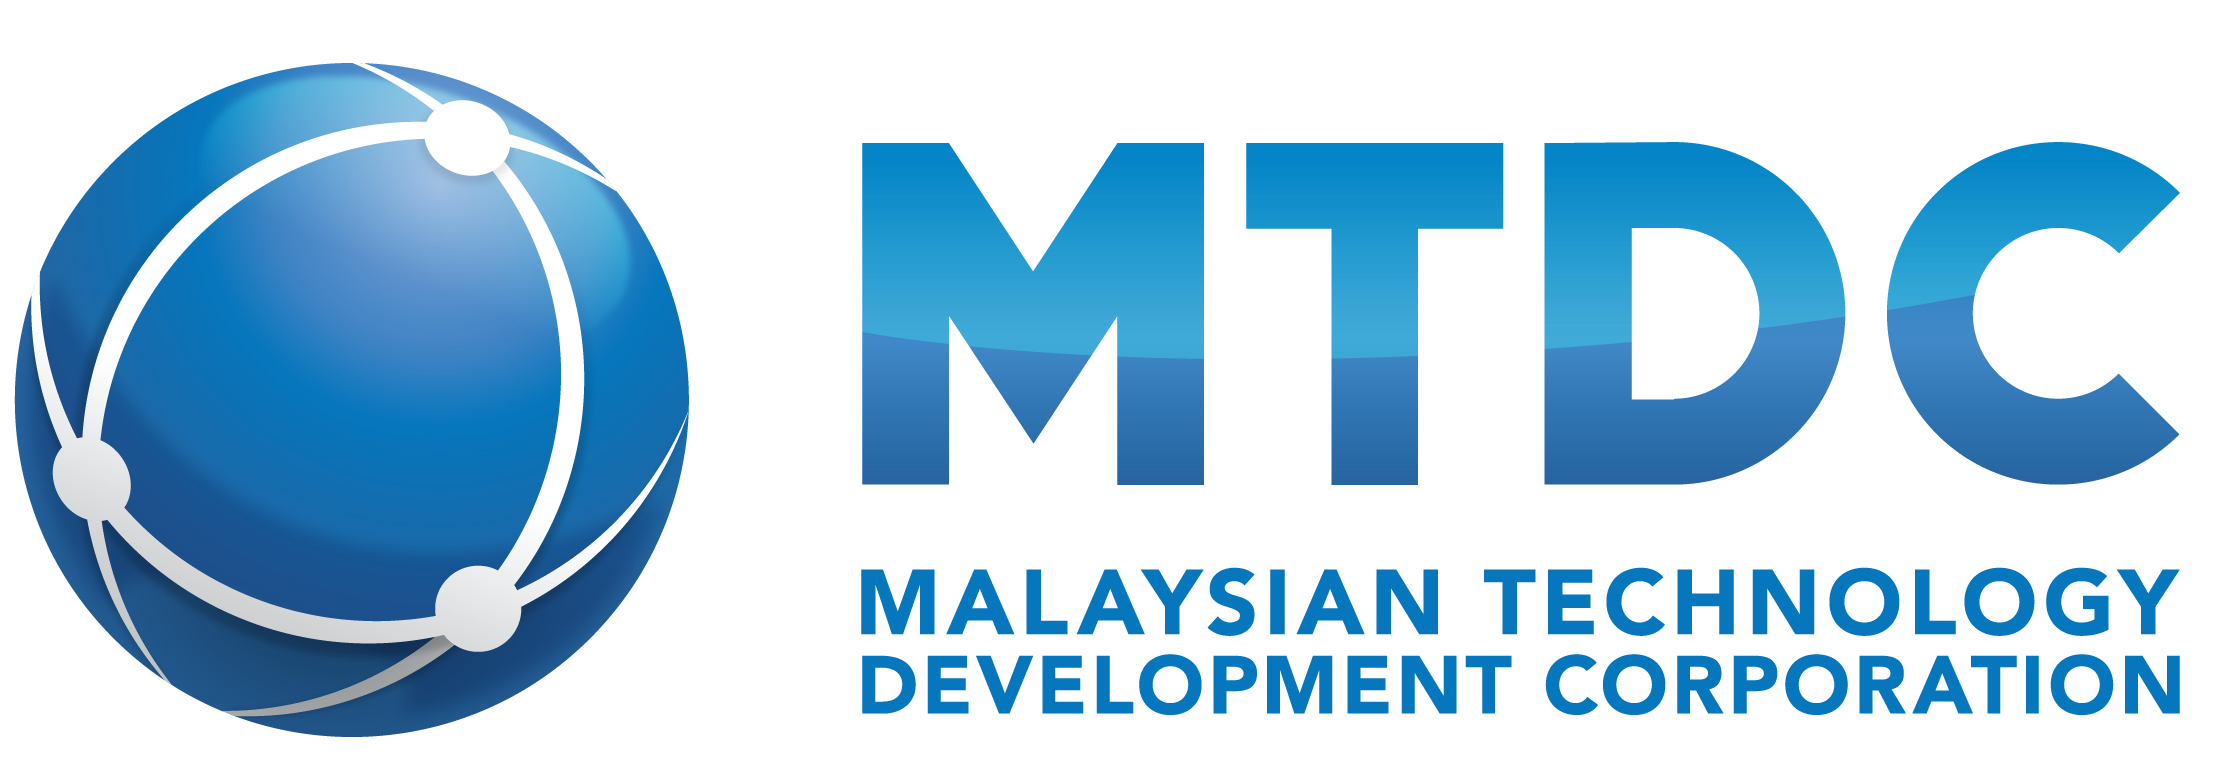 Malaysian Technology Development Corporation 